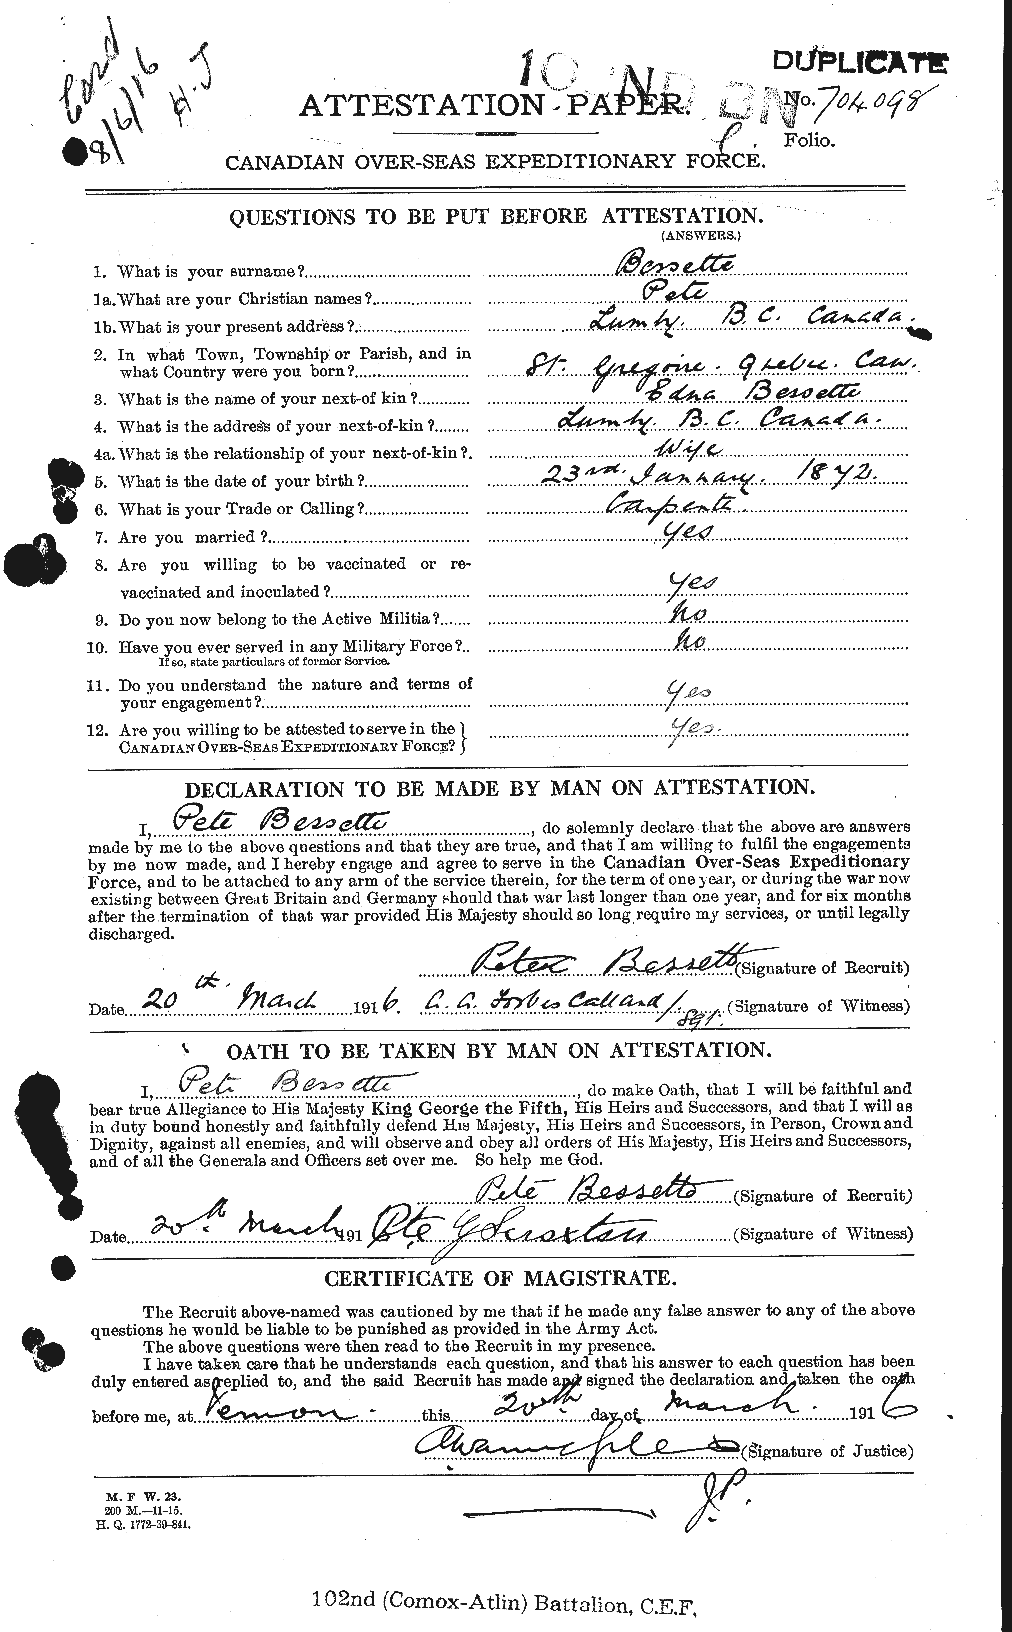 Dossiers du Personnel de la Première Guerre mondiale - CEC 240187a